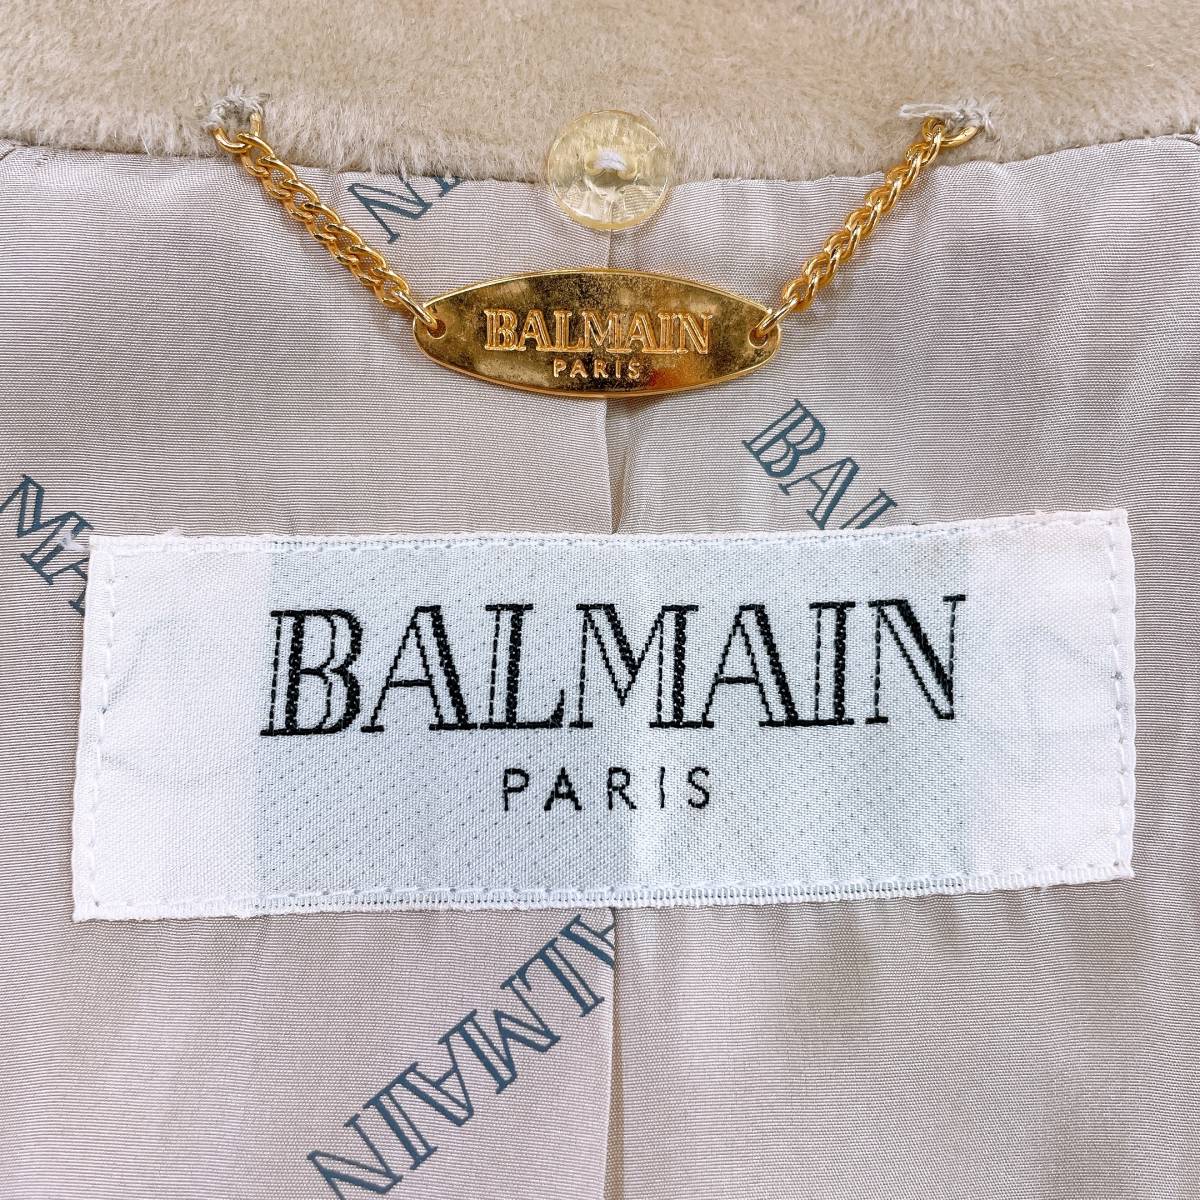 新品 レディース9 M BALMAIN ロングコート ライトブラウン 茶 かっこいい オシャレ 秋冬 高級 フランス バルマン 【20152】